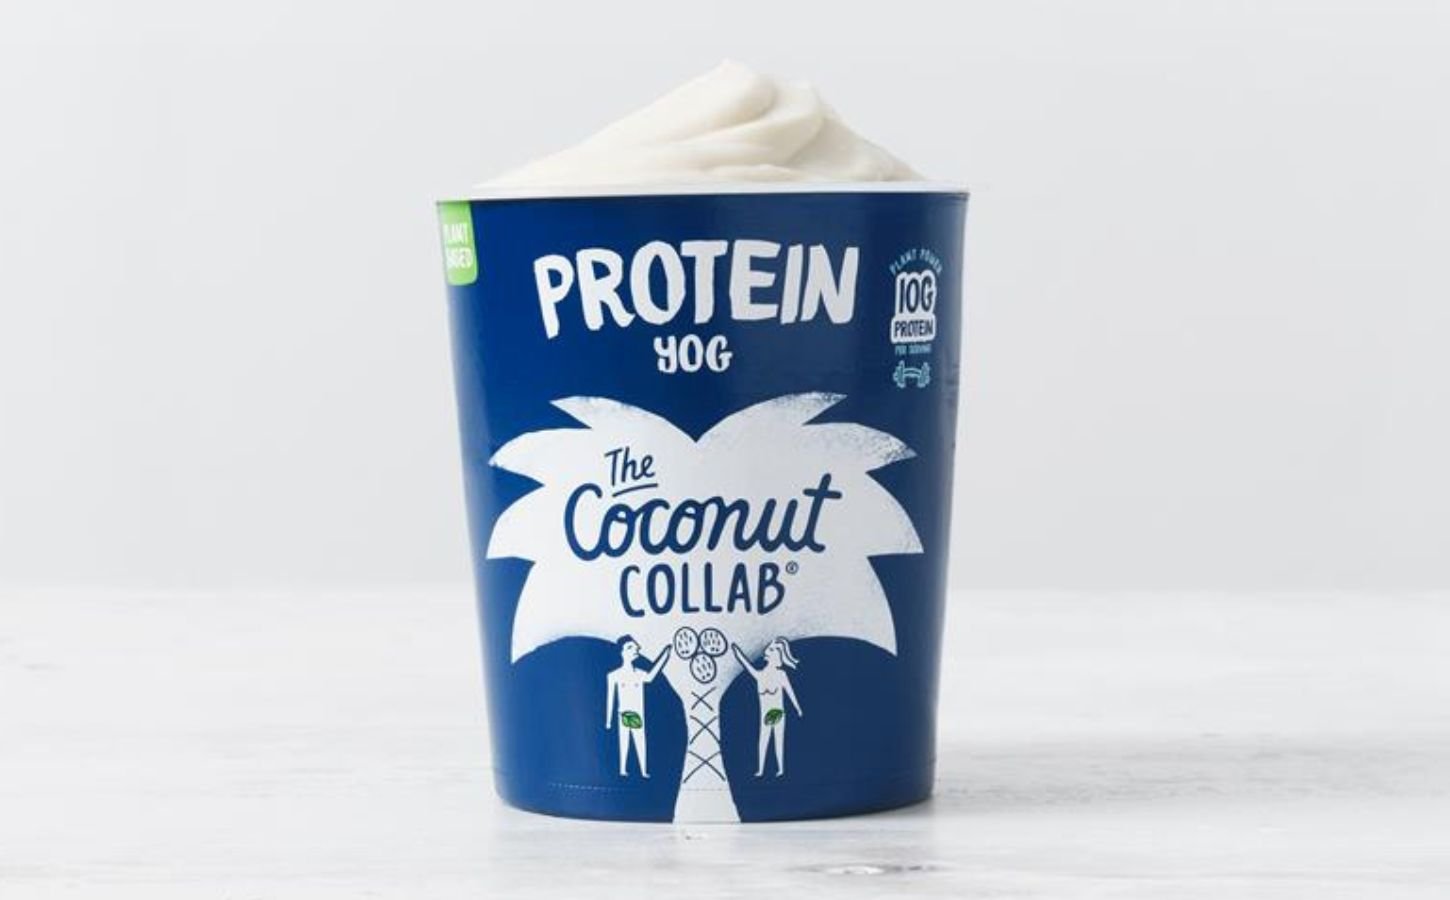 A high protein vegan yogurt - "Protein Yog" - from Coconut Collab